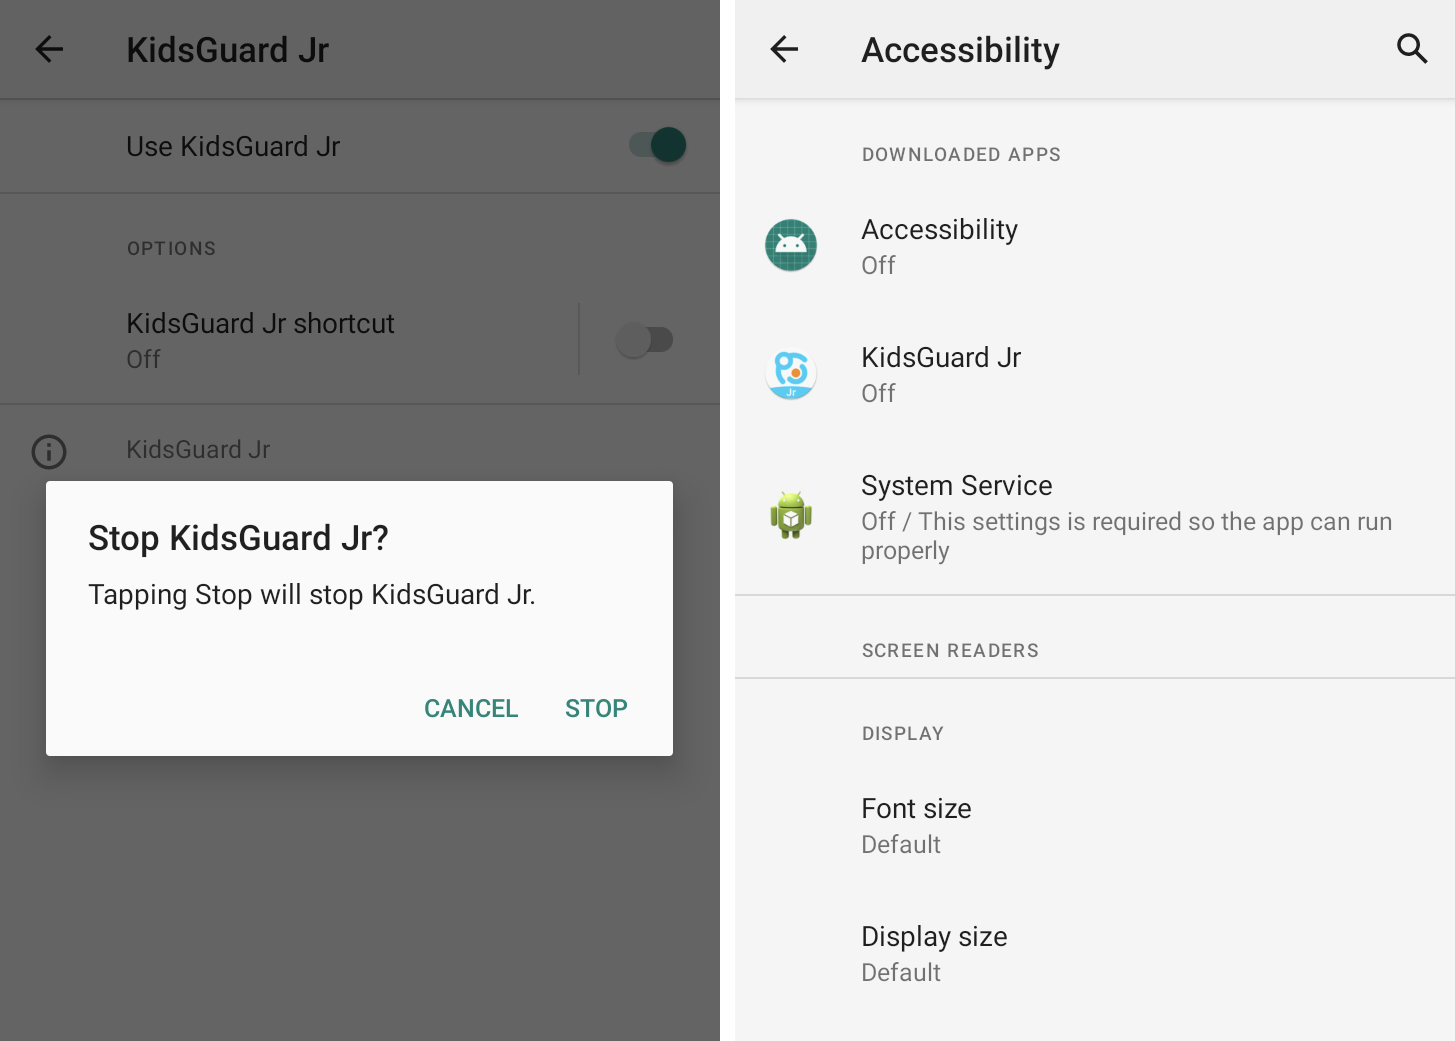 两张并排的屏幕截图显示了一个名为 KidsGuard 的应用程序劫持了 Android 中的辅助功能以窥探毫无戒心的用户。 第二个屏幕截图显示了三个跟踪软件应用程序——称为 Accessibility、KidsGuard 和 System Service——全部切换为“关闭”状态，以便它们不再有效运行。